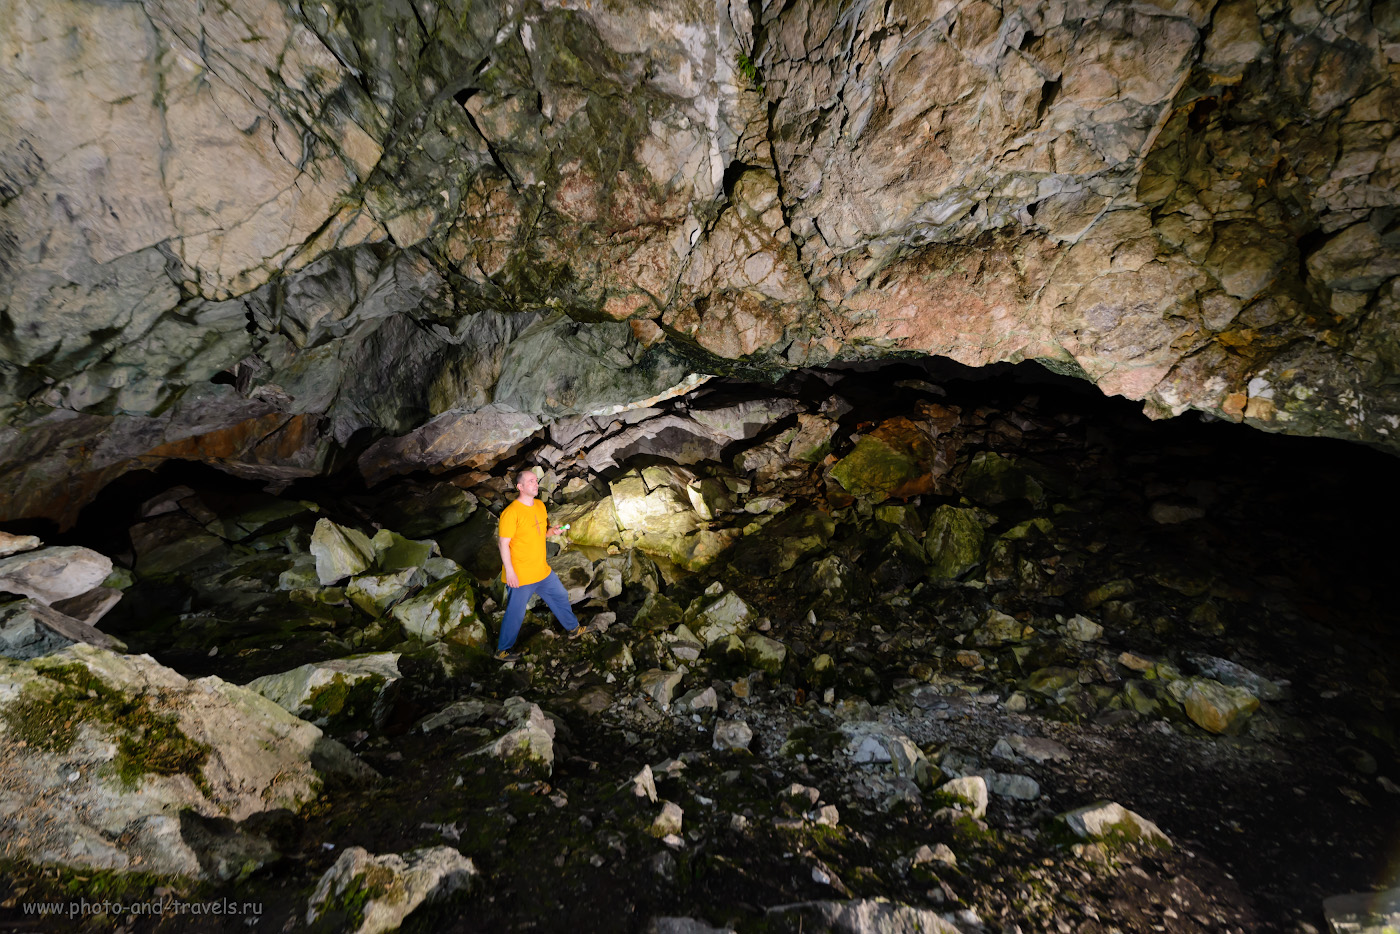 25. Поменял схему освещения. Как я фотографировал в Большой Аракаевской пещере. 1/40, 5.6, 1250, -1.0, 14.